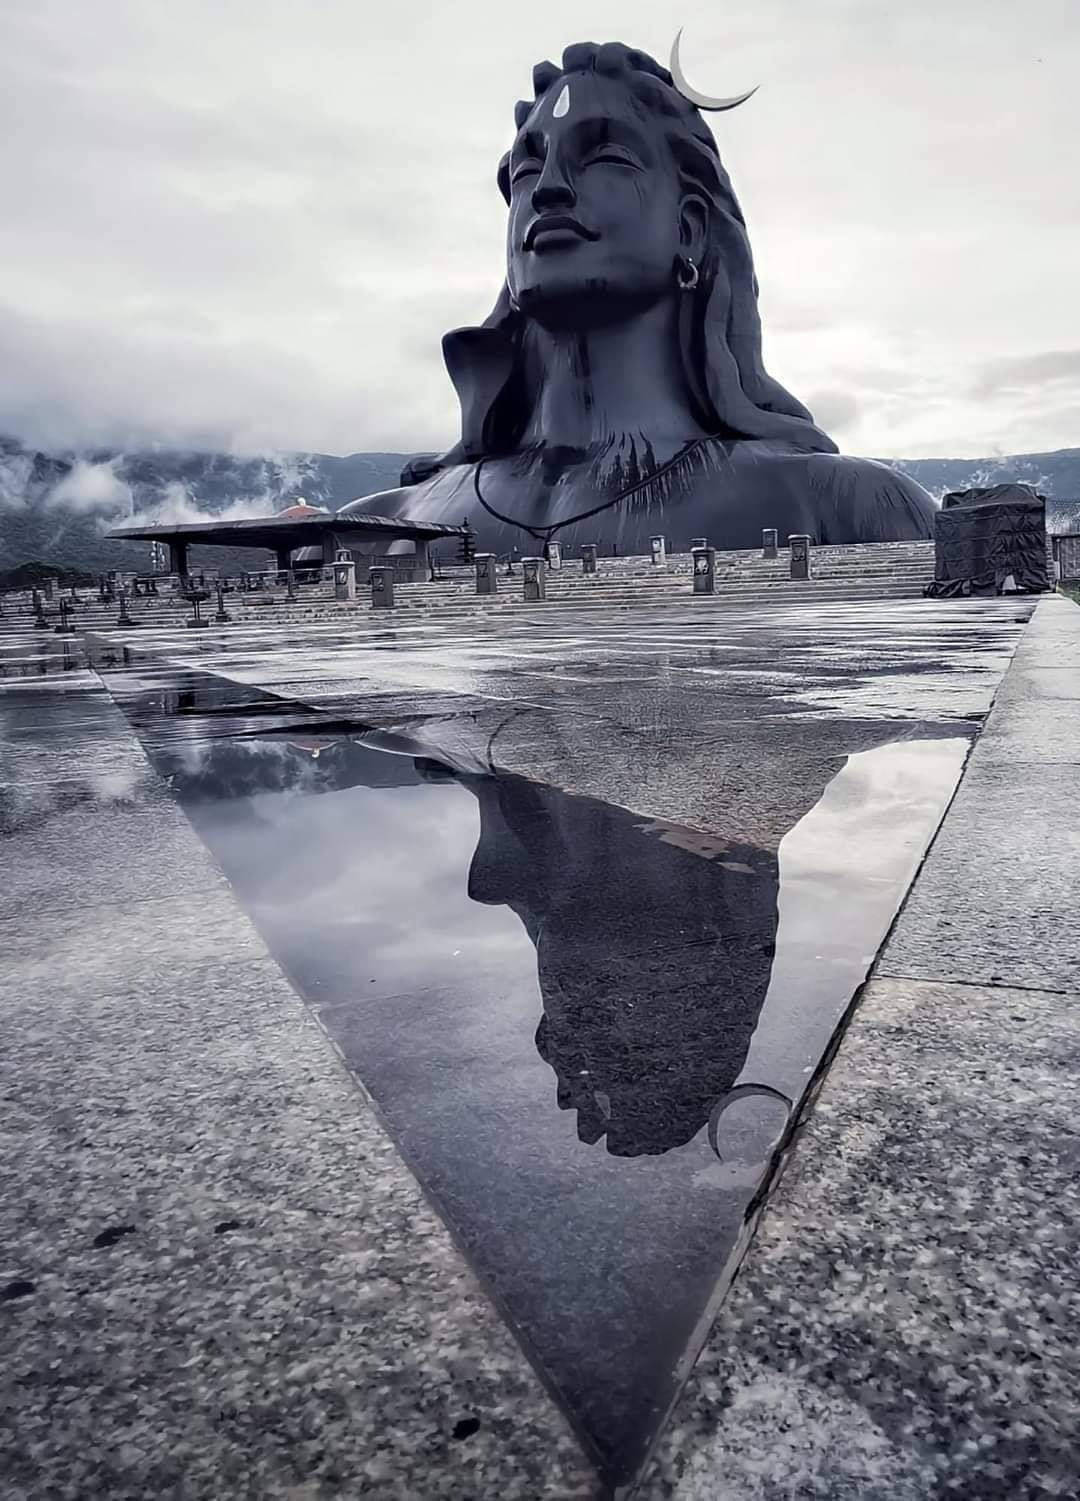 Adiyogi Shiva Statue And Its Reflection Wallpaper